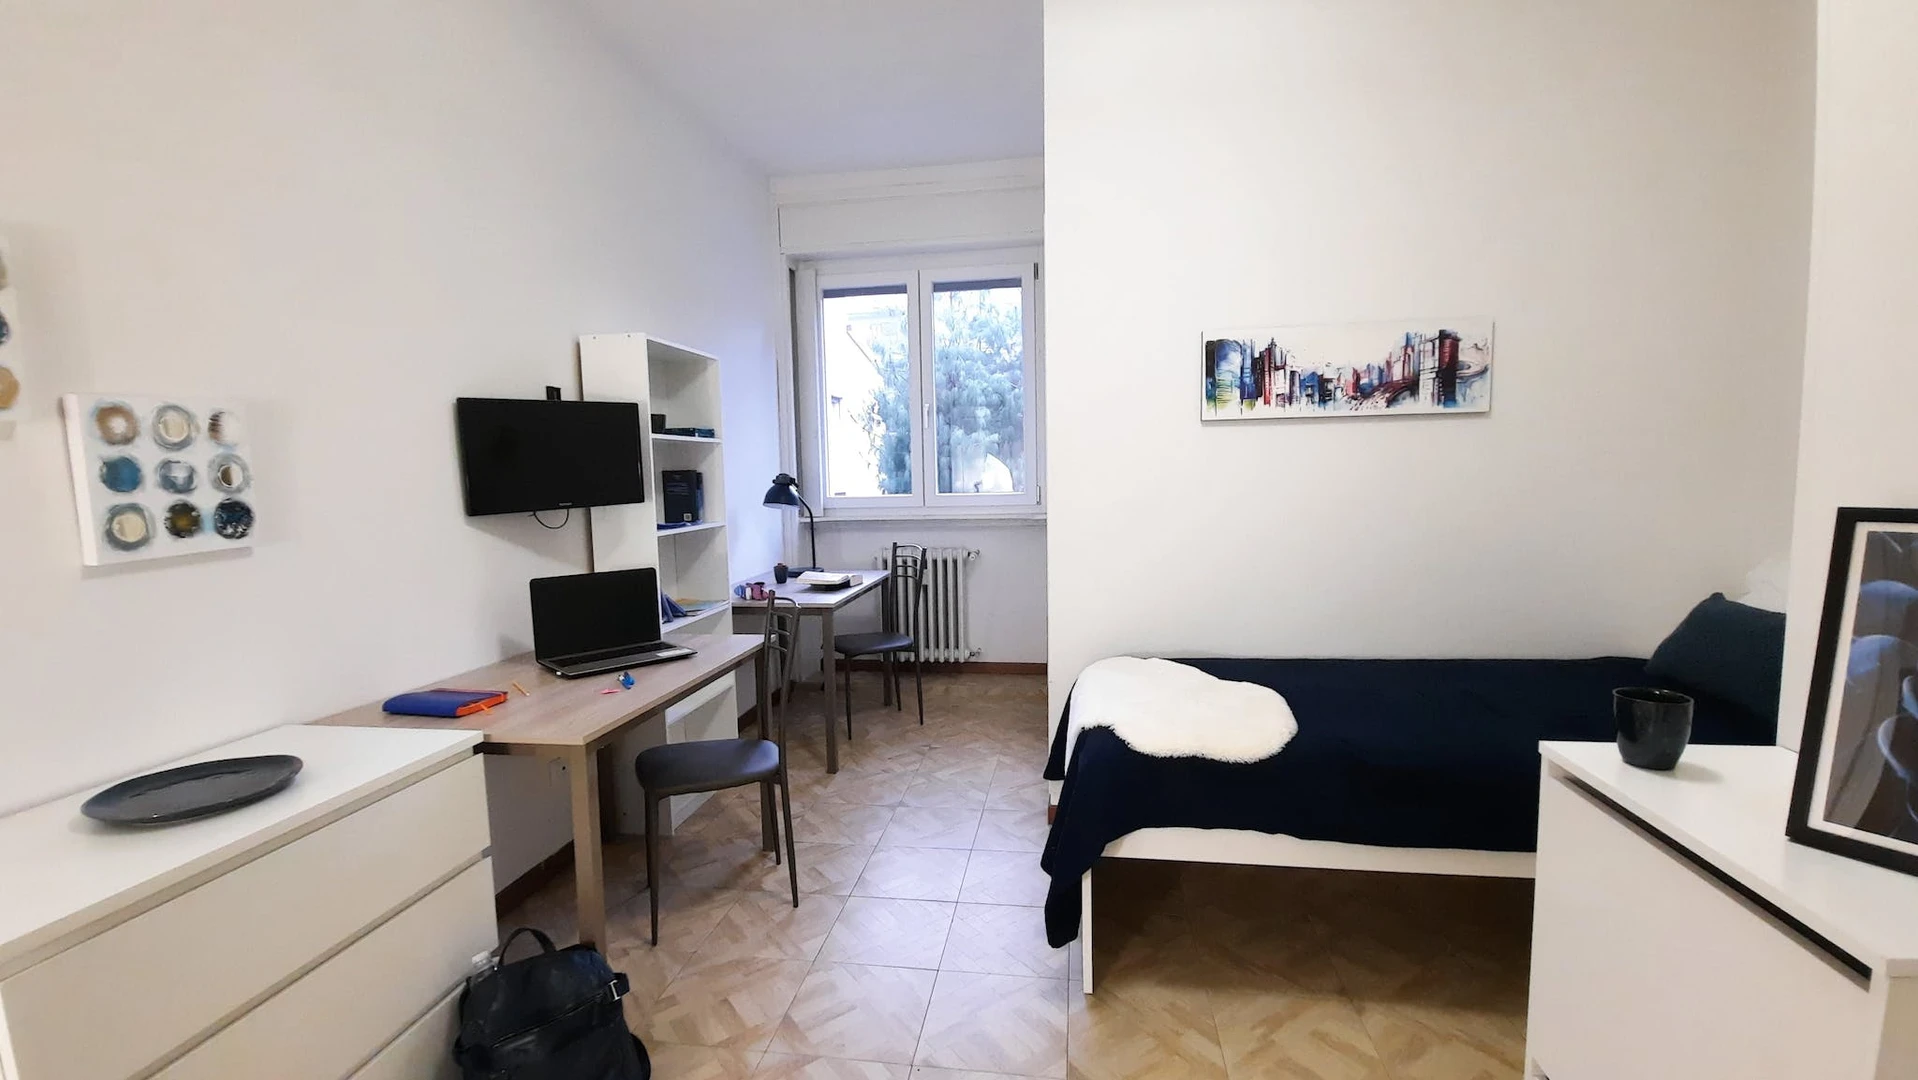 Gemeinsames Zimmer mit einem anderen Studierenden in Bergamo